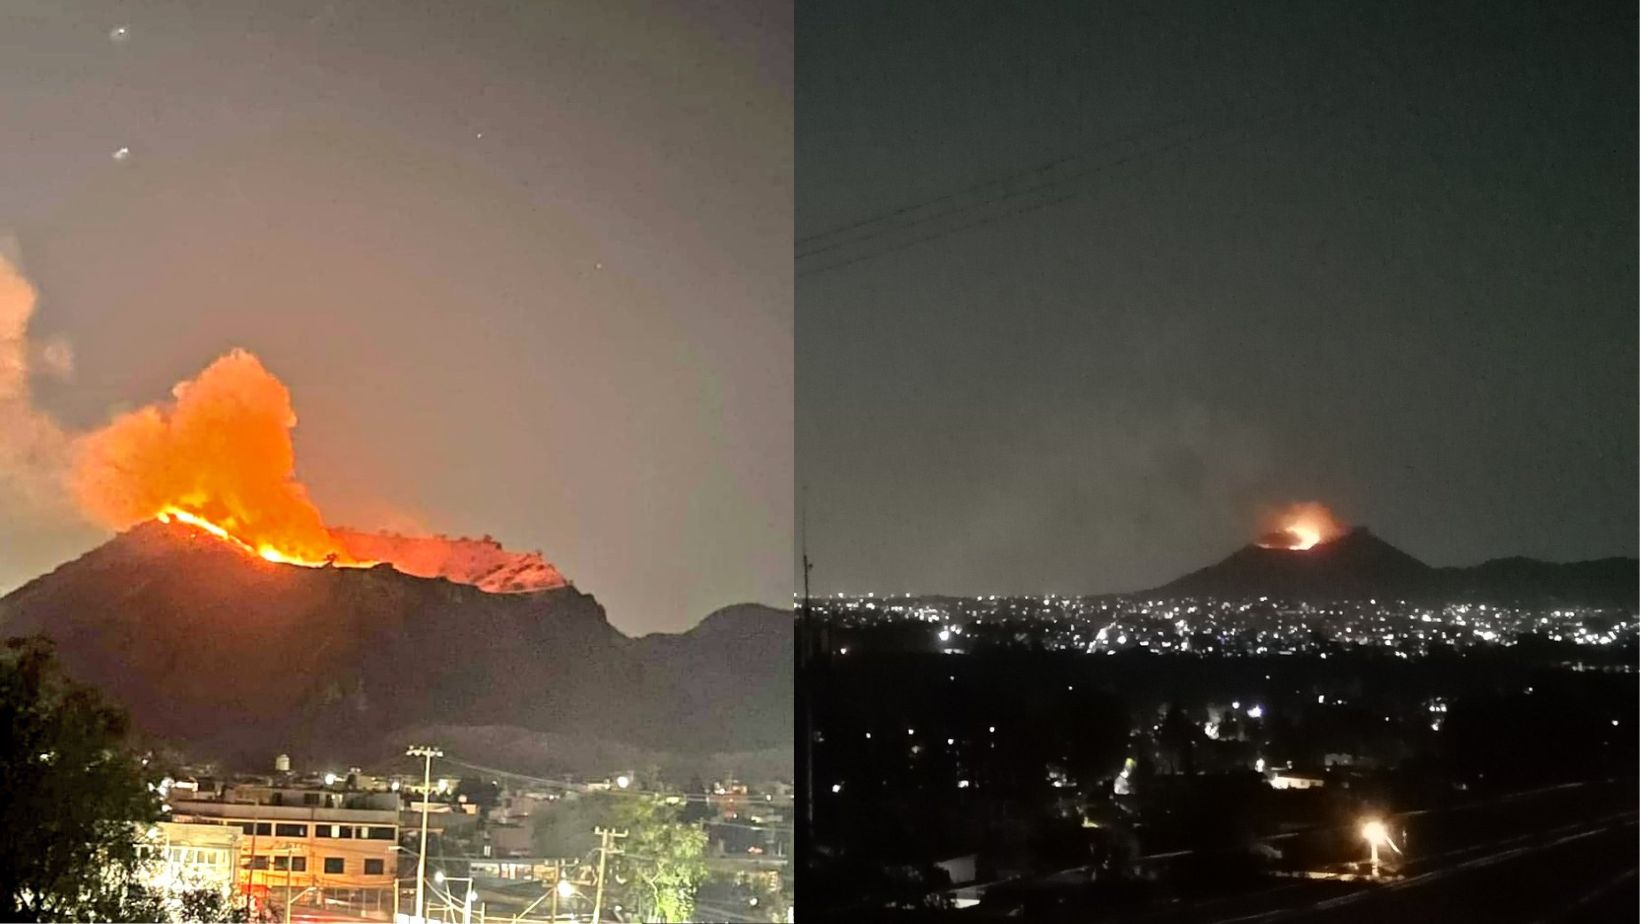 Fuerte incendio consumió parte de la cima del Cerro de Xaltepec en Tláhuac